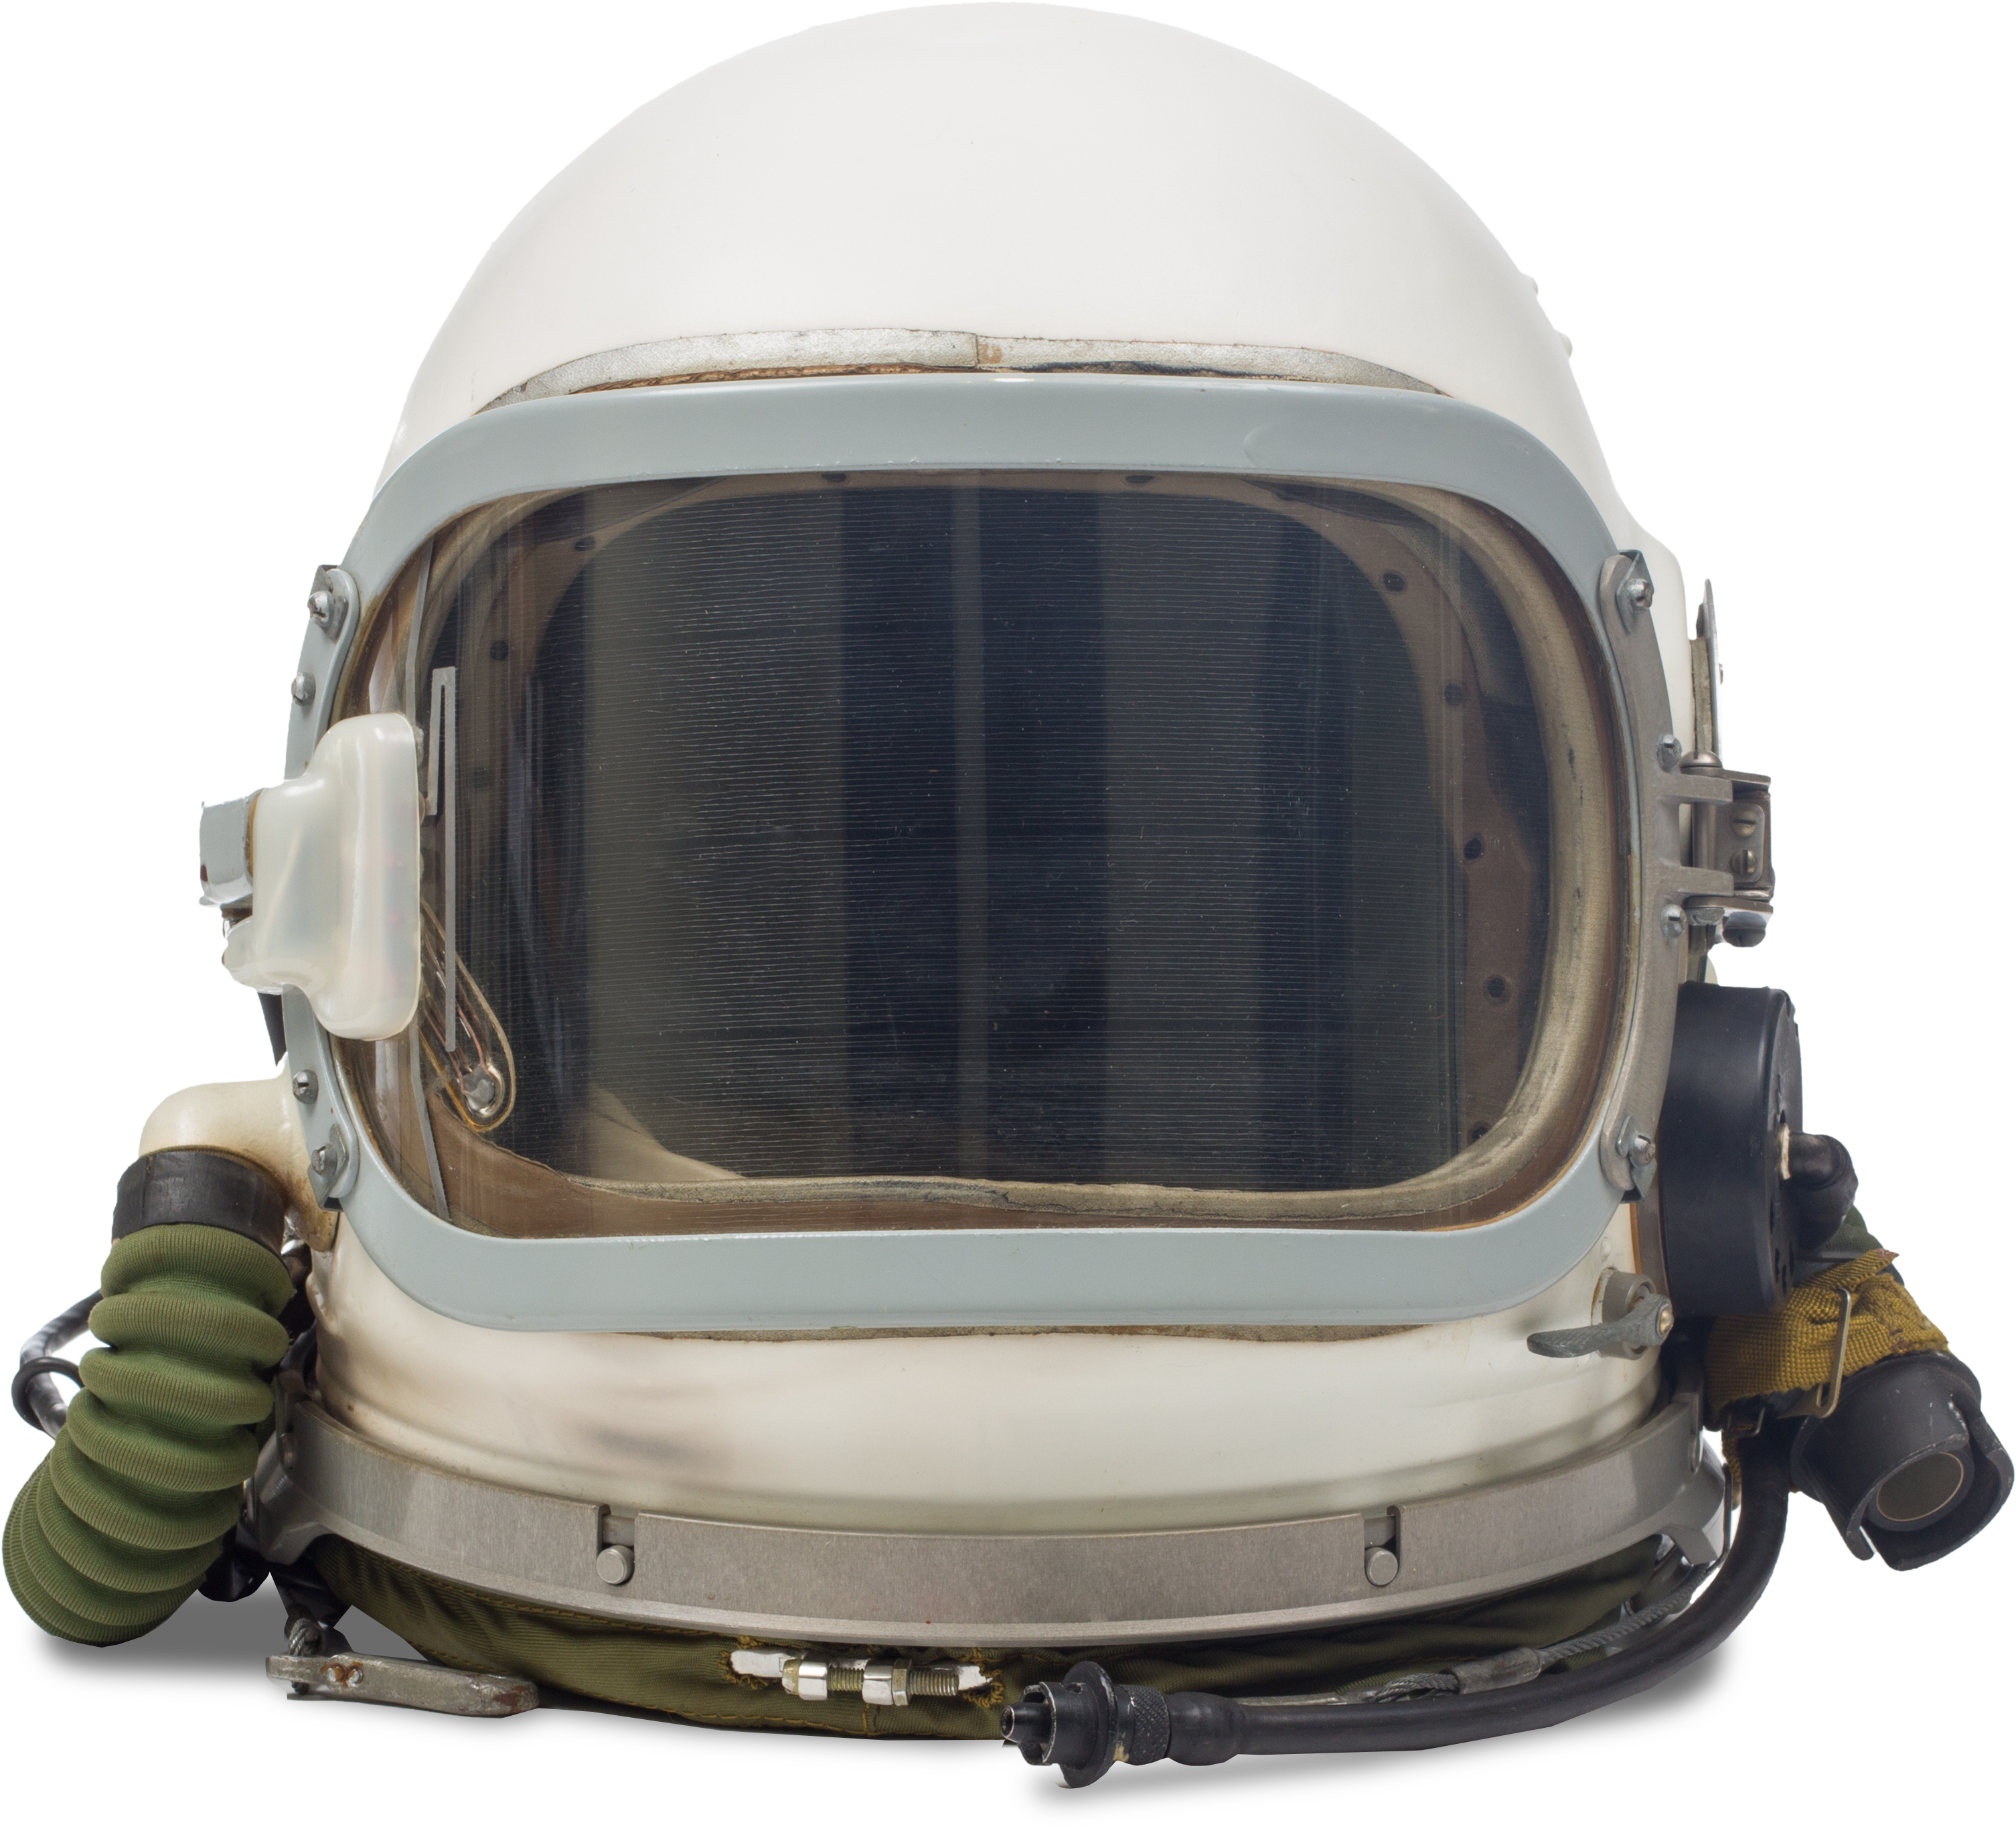 Helmet Astronaut Space Download HD PNG Image